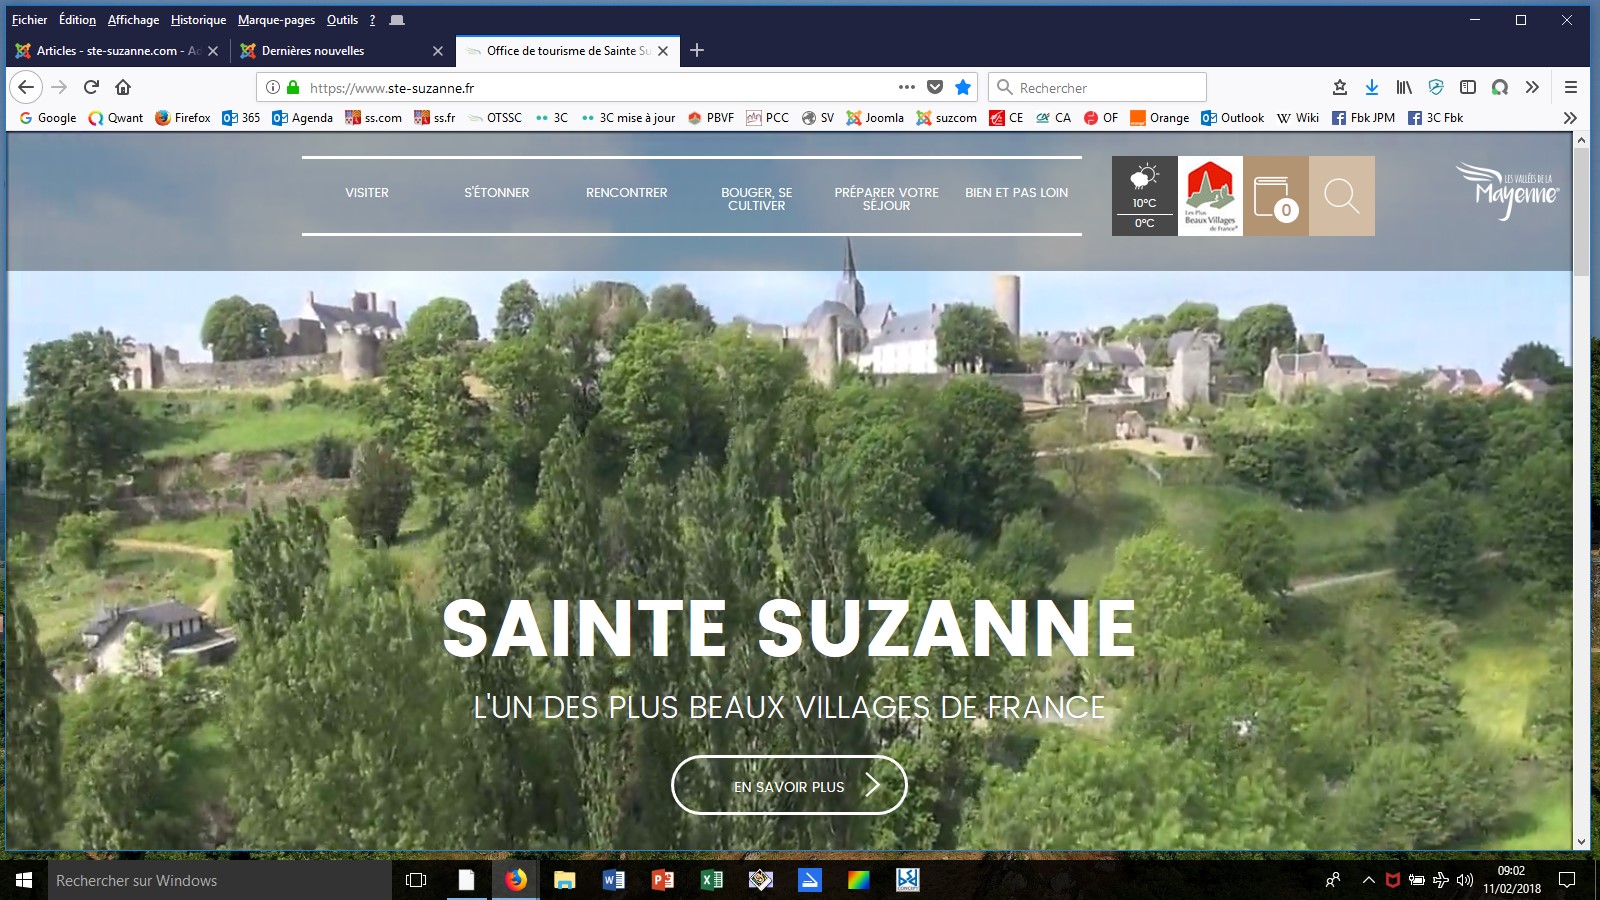 Site ss.fr 2018